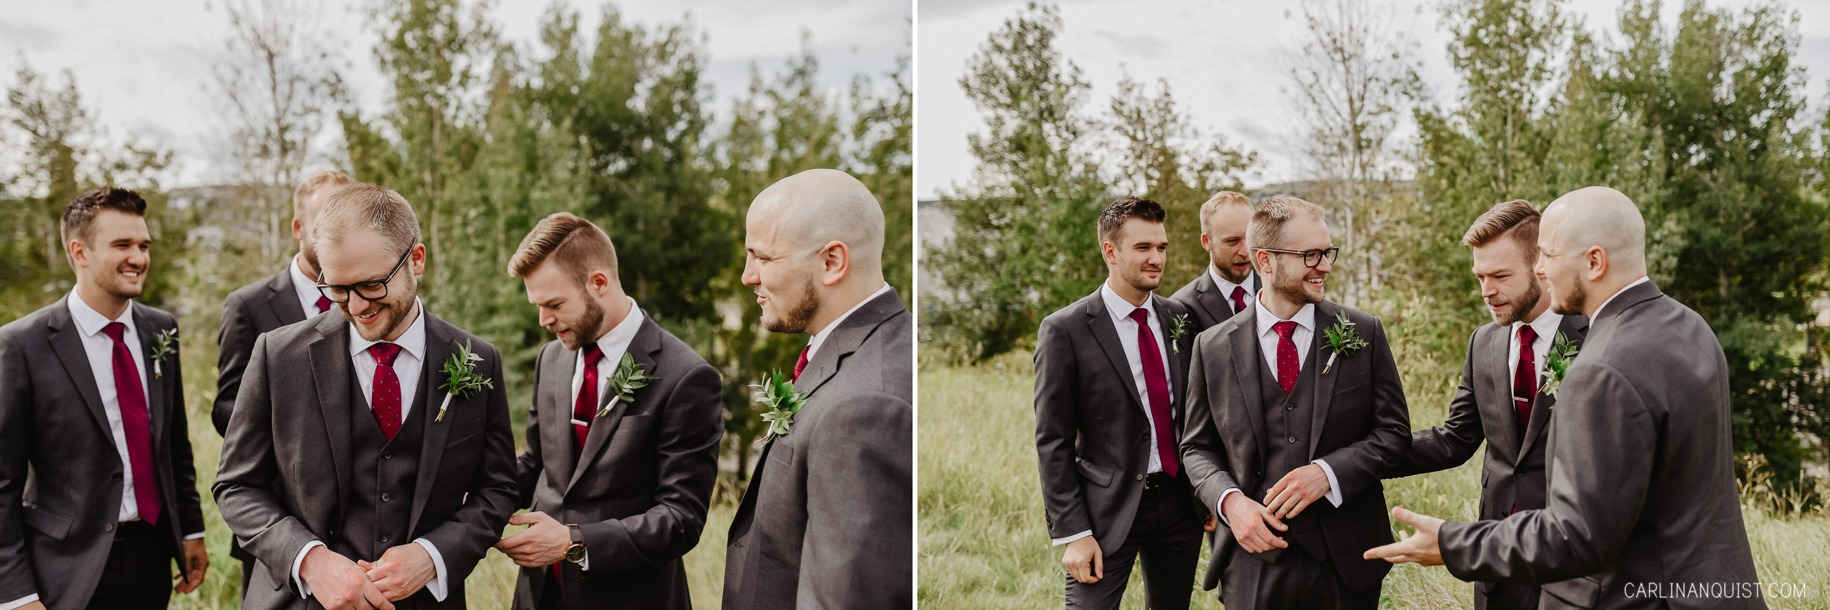 Groom & Groomsmen | Calgary Wedding Photographers